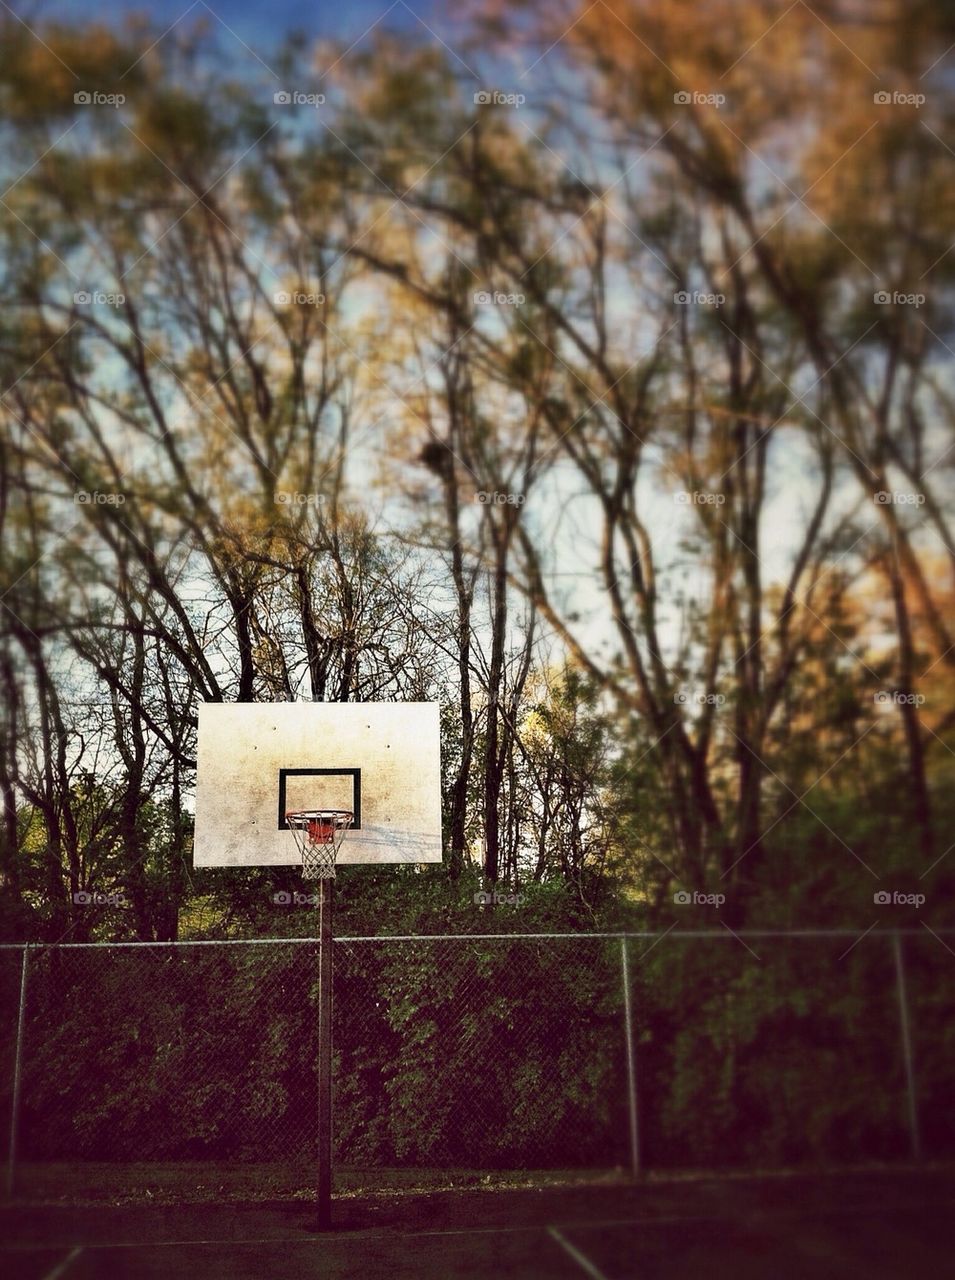 Playing some basketball.